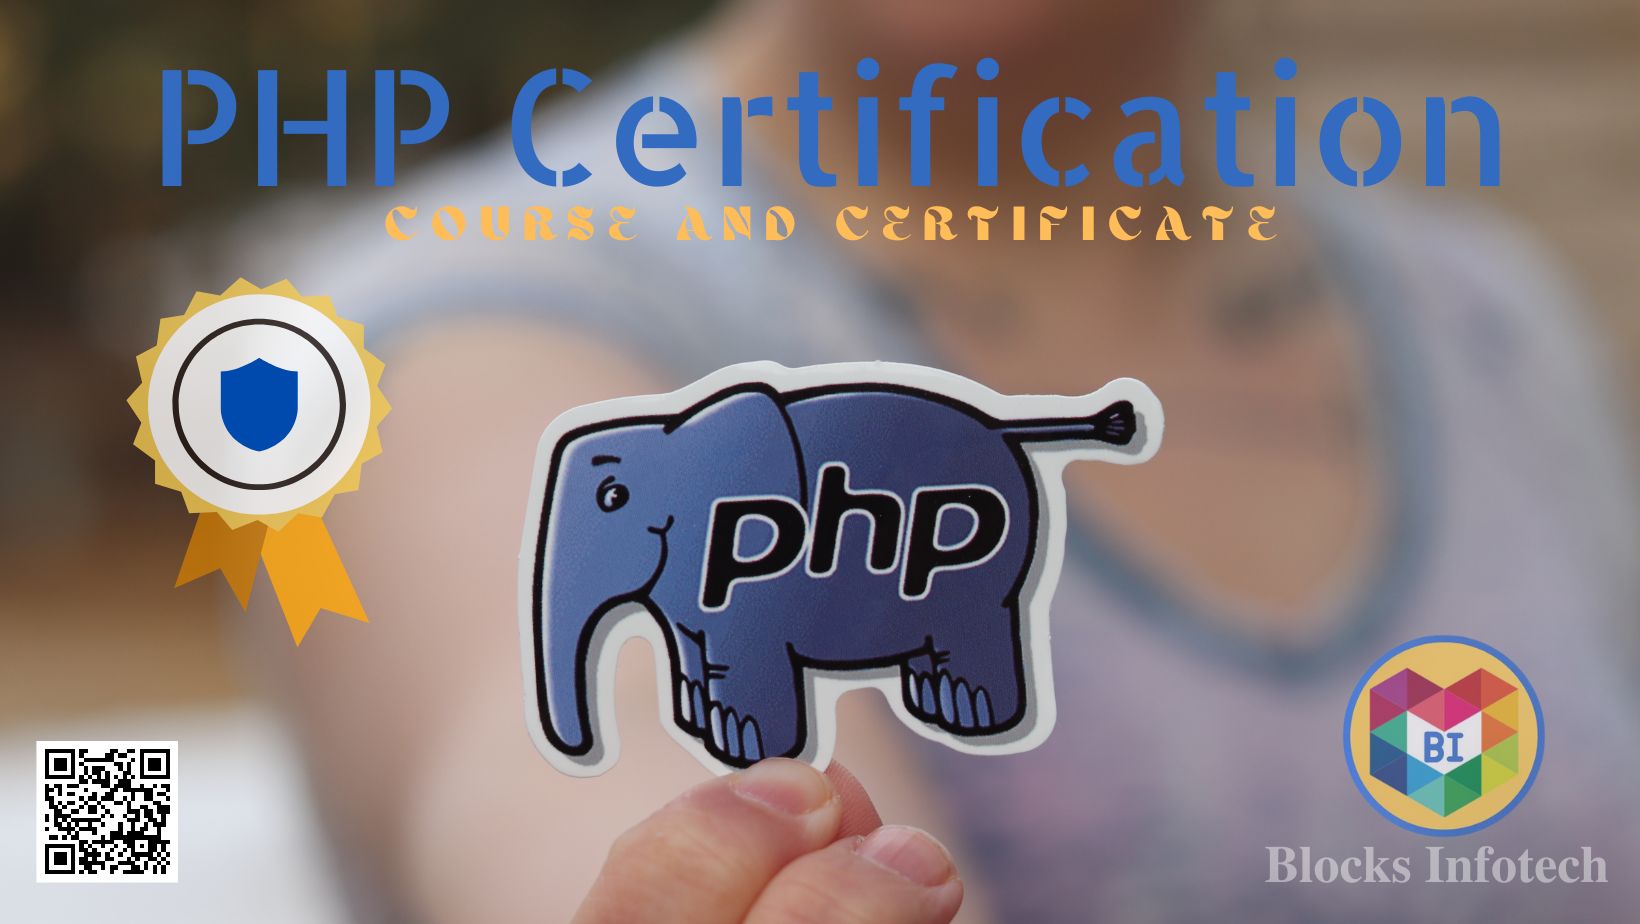 Php_Certificate.jpg